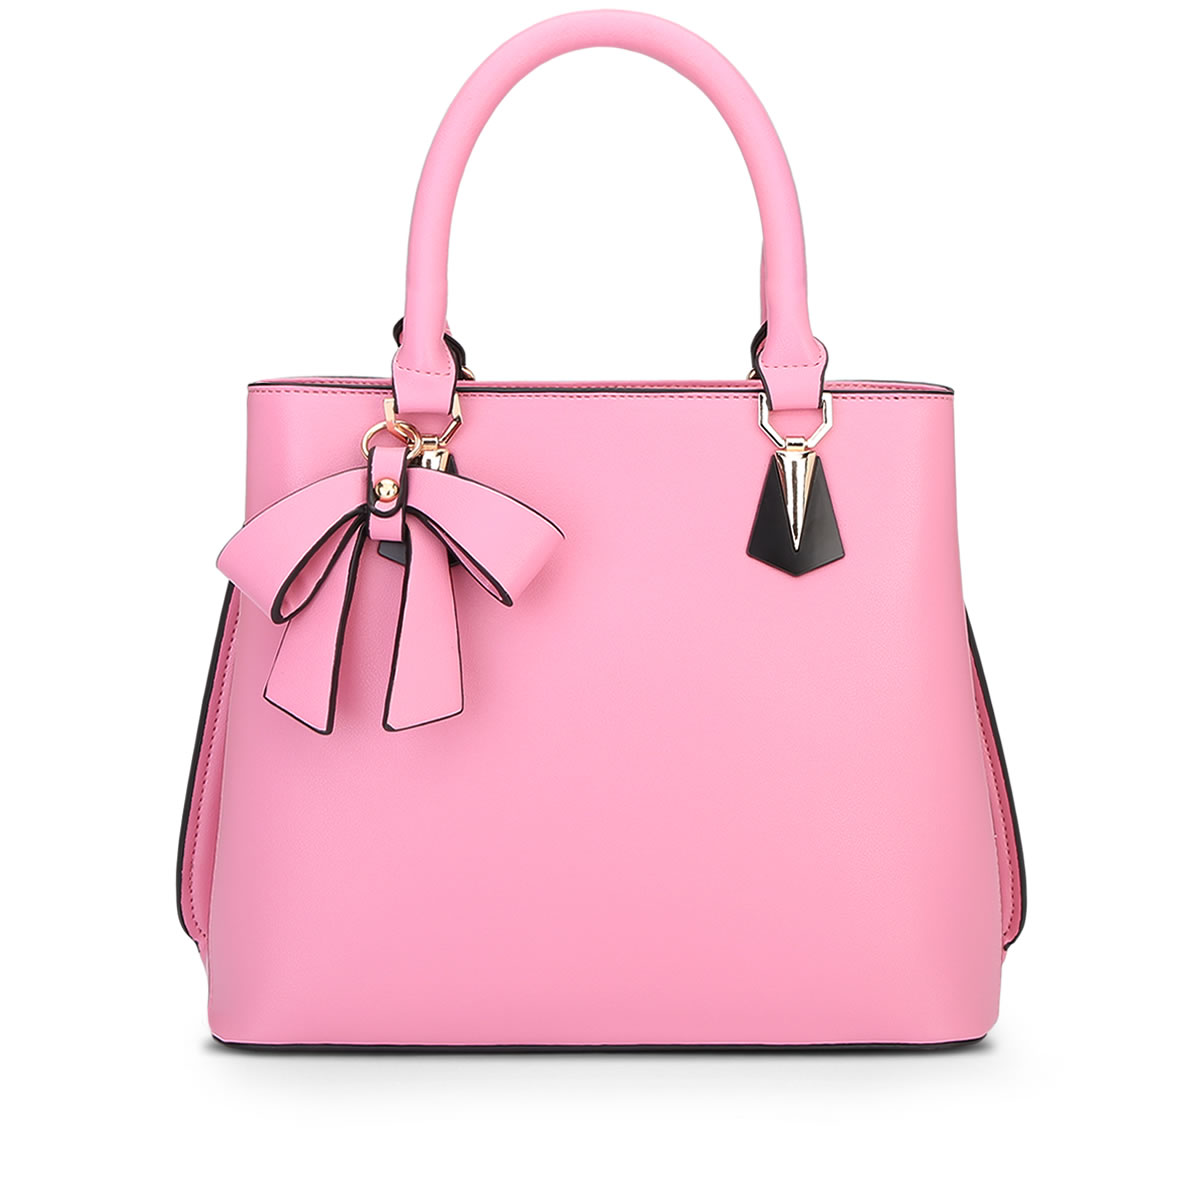 2016新款女包甜美蝴蝶结手提包包粉红色手袋简约时尚潮女包单肩包